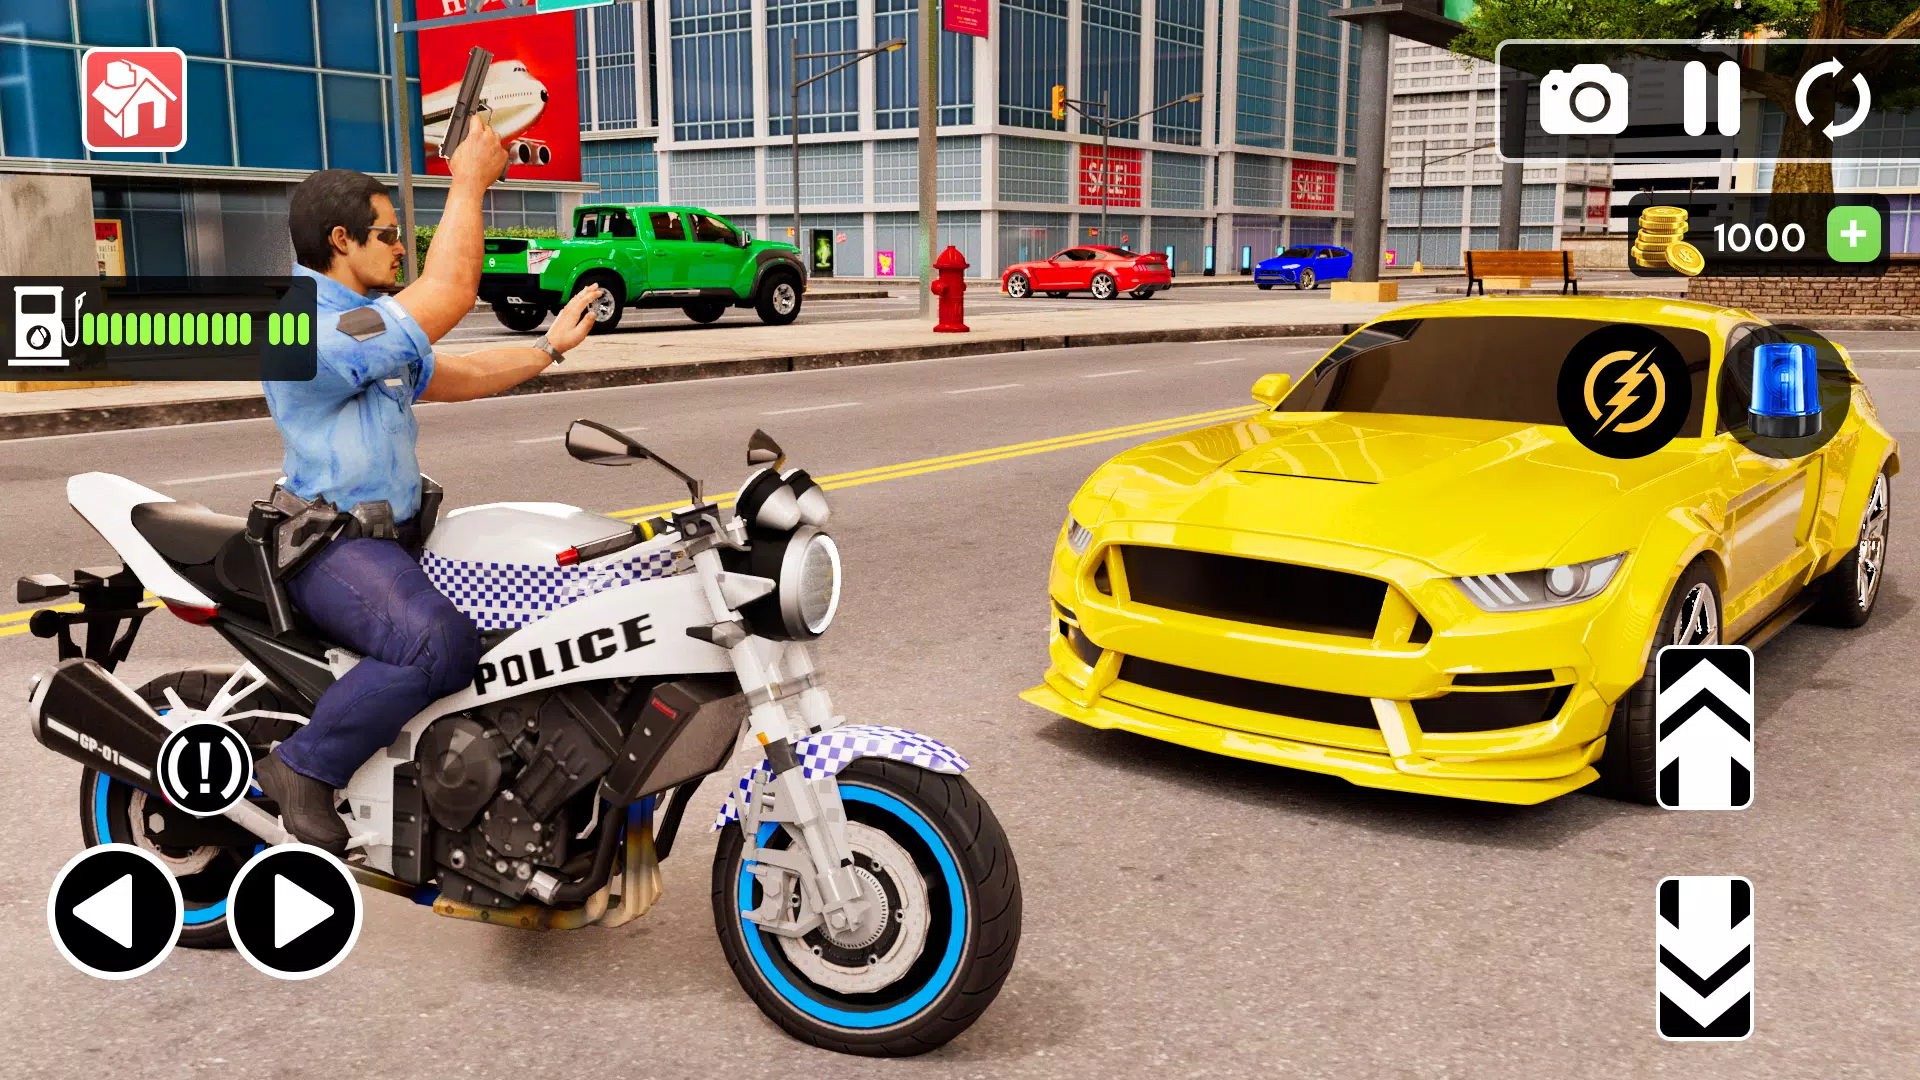 Police Motorbike Simulator 3D APK pour Android Télécharger